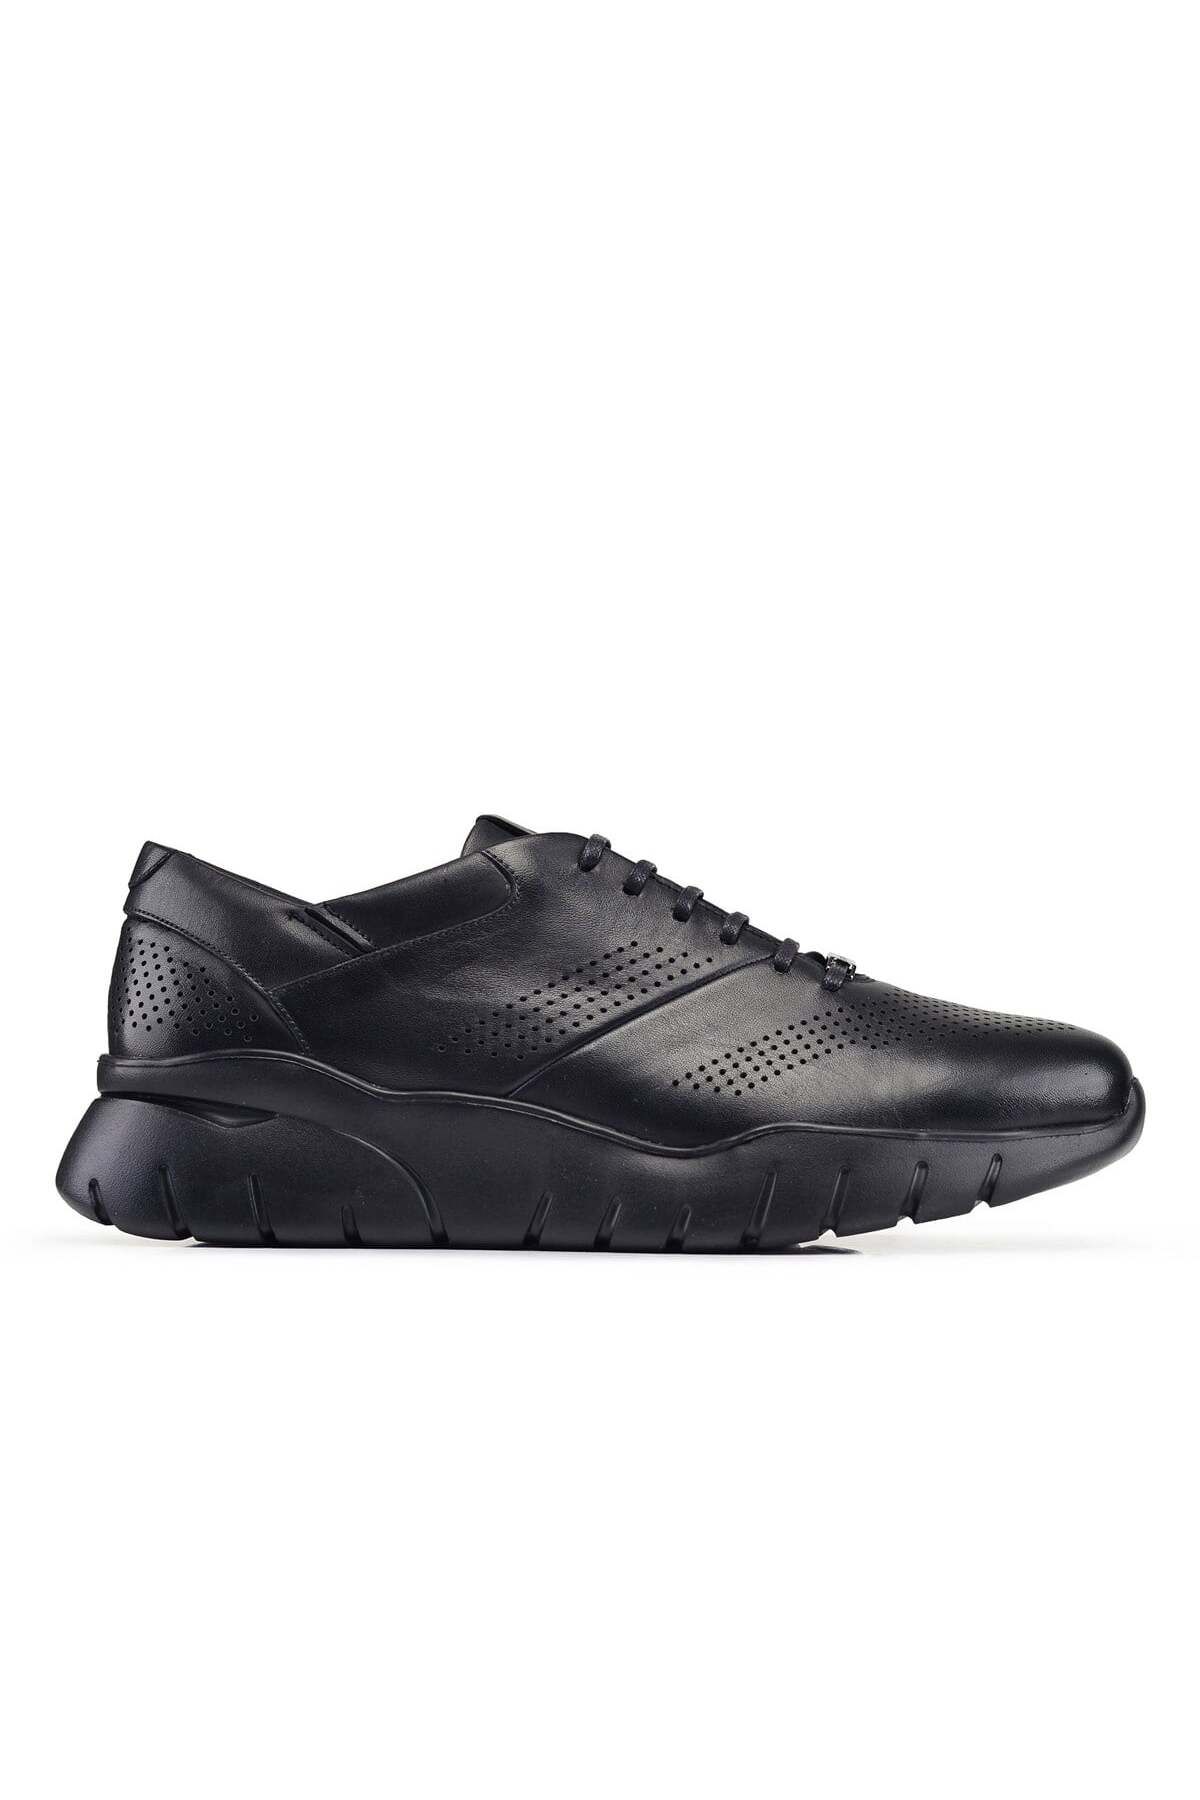 Nevzat Onay Siyah Günlük Bağcıklı Erkek Sneaker -93801-